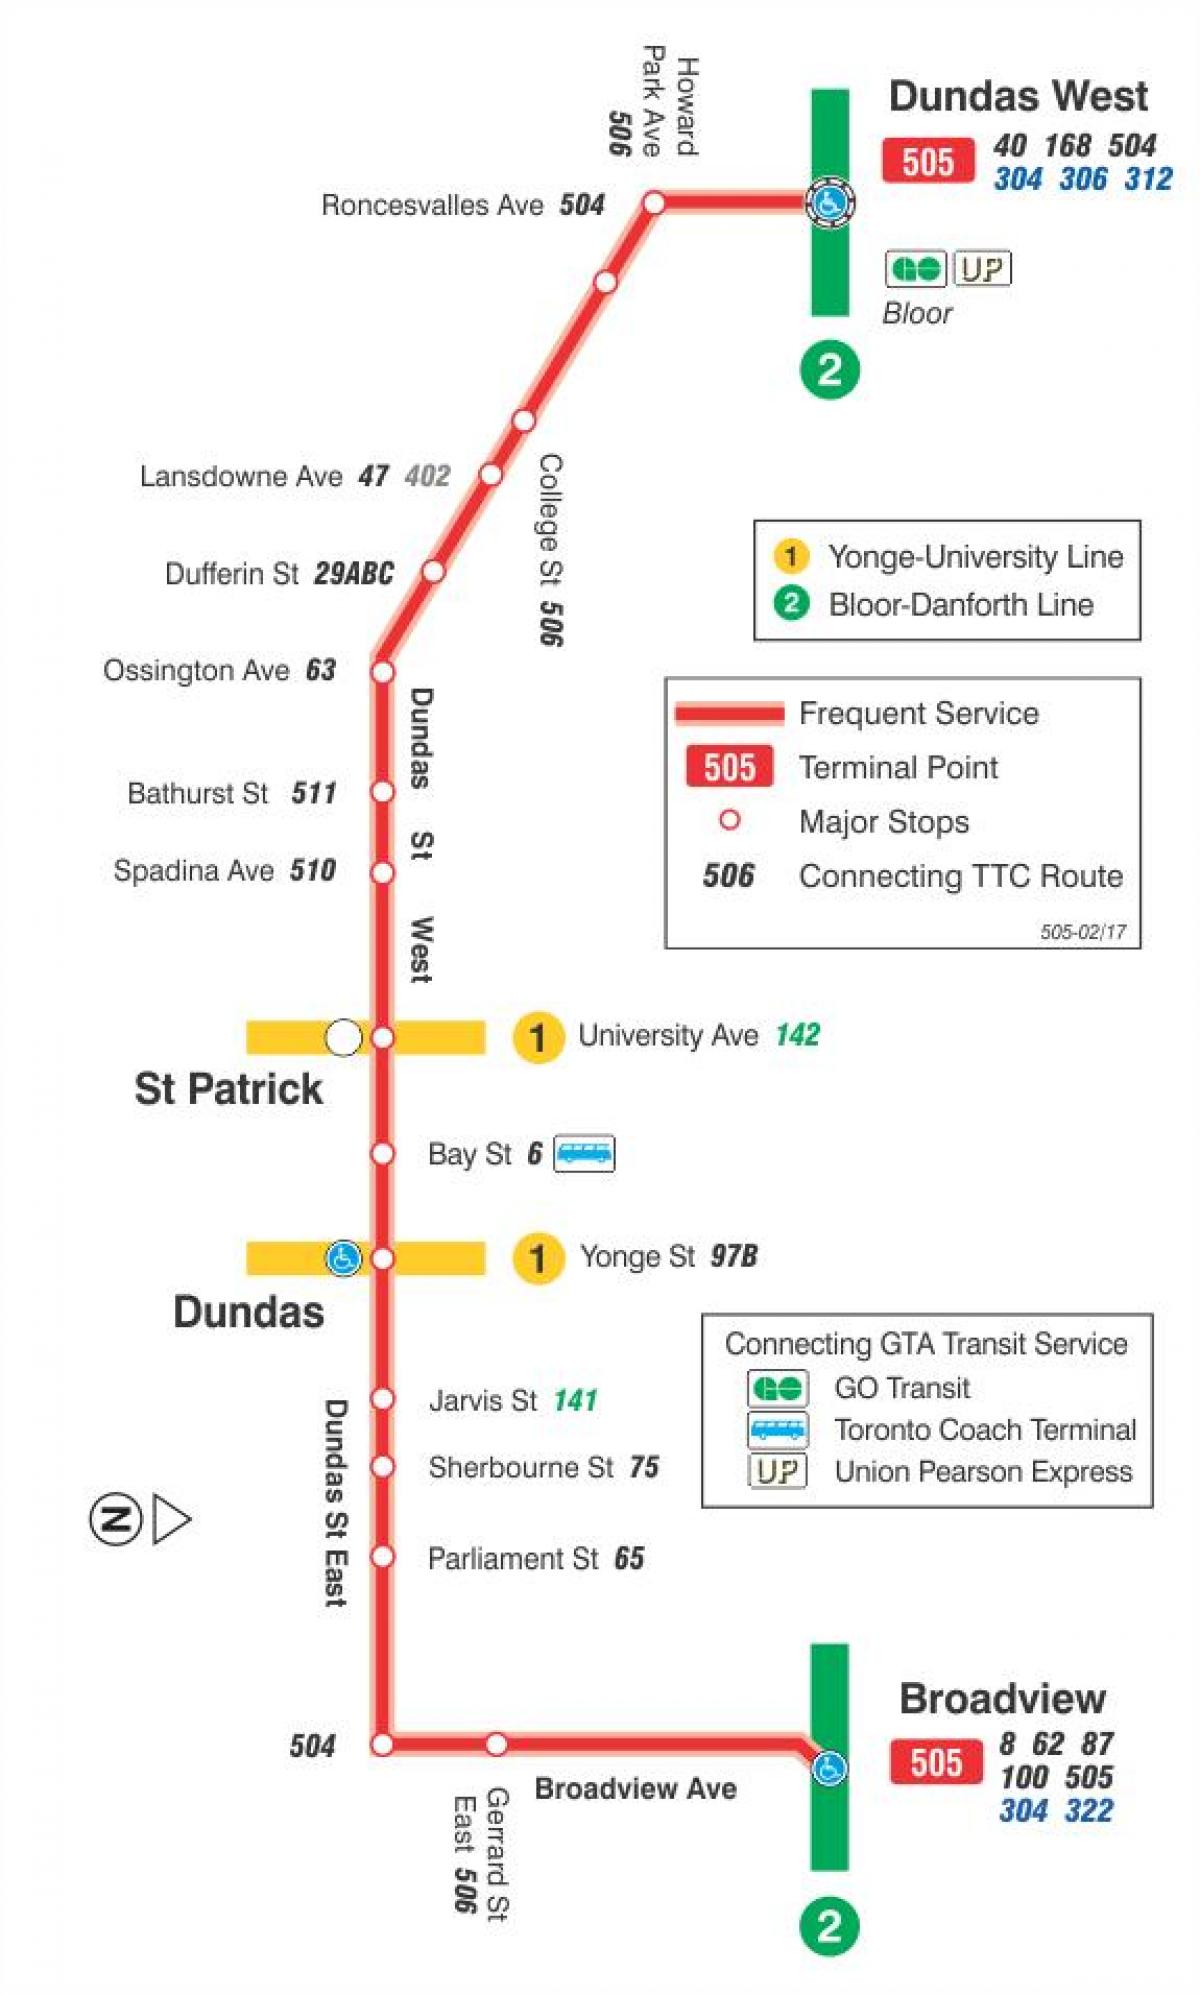 505 tramvay hattı haritası Dundas